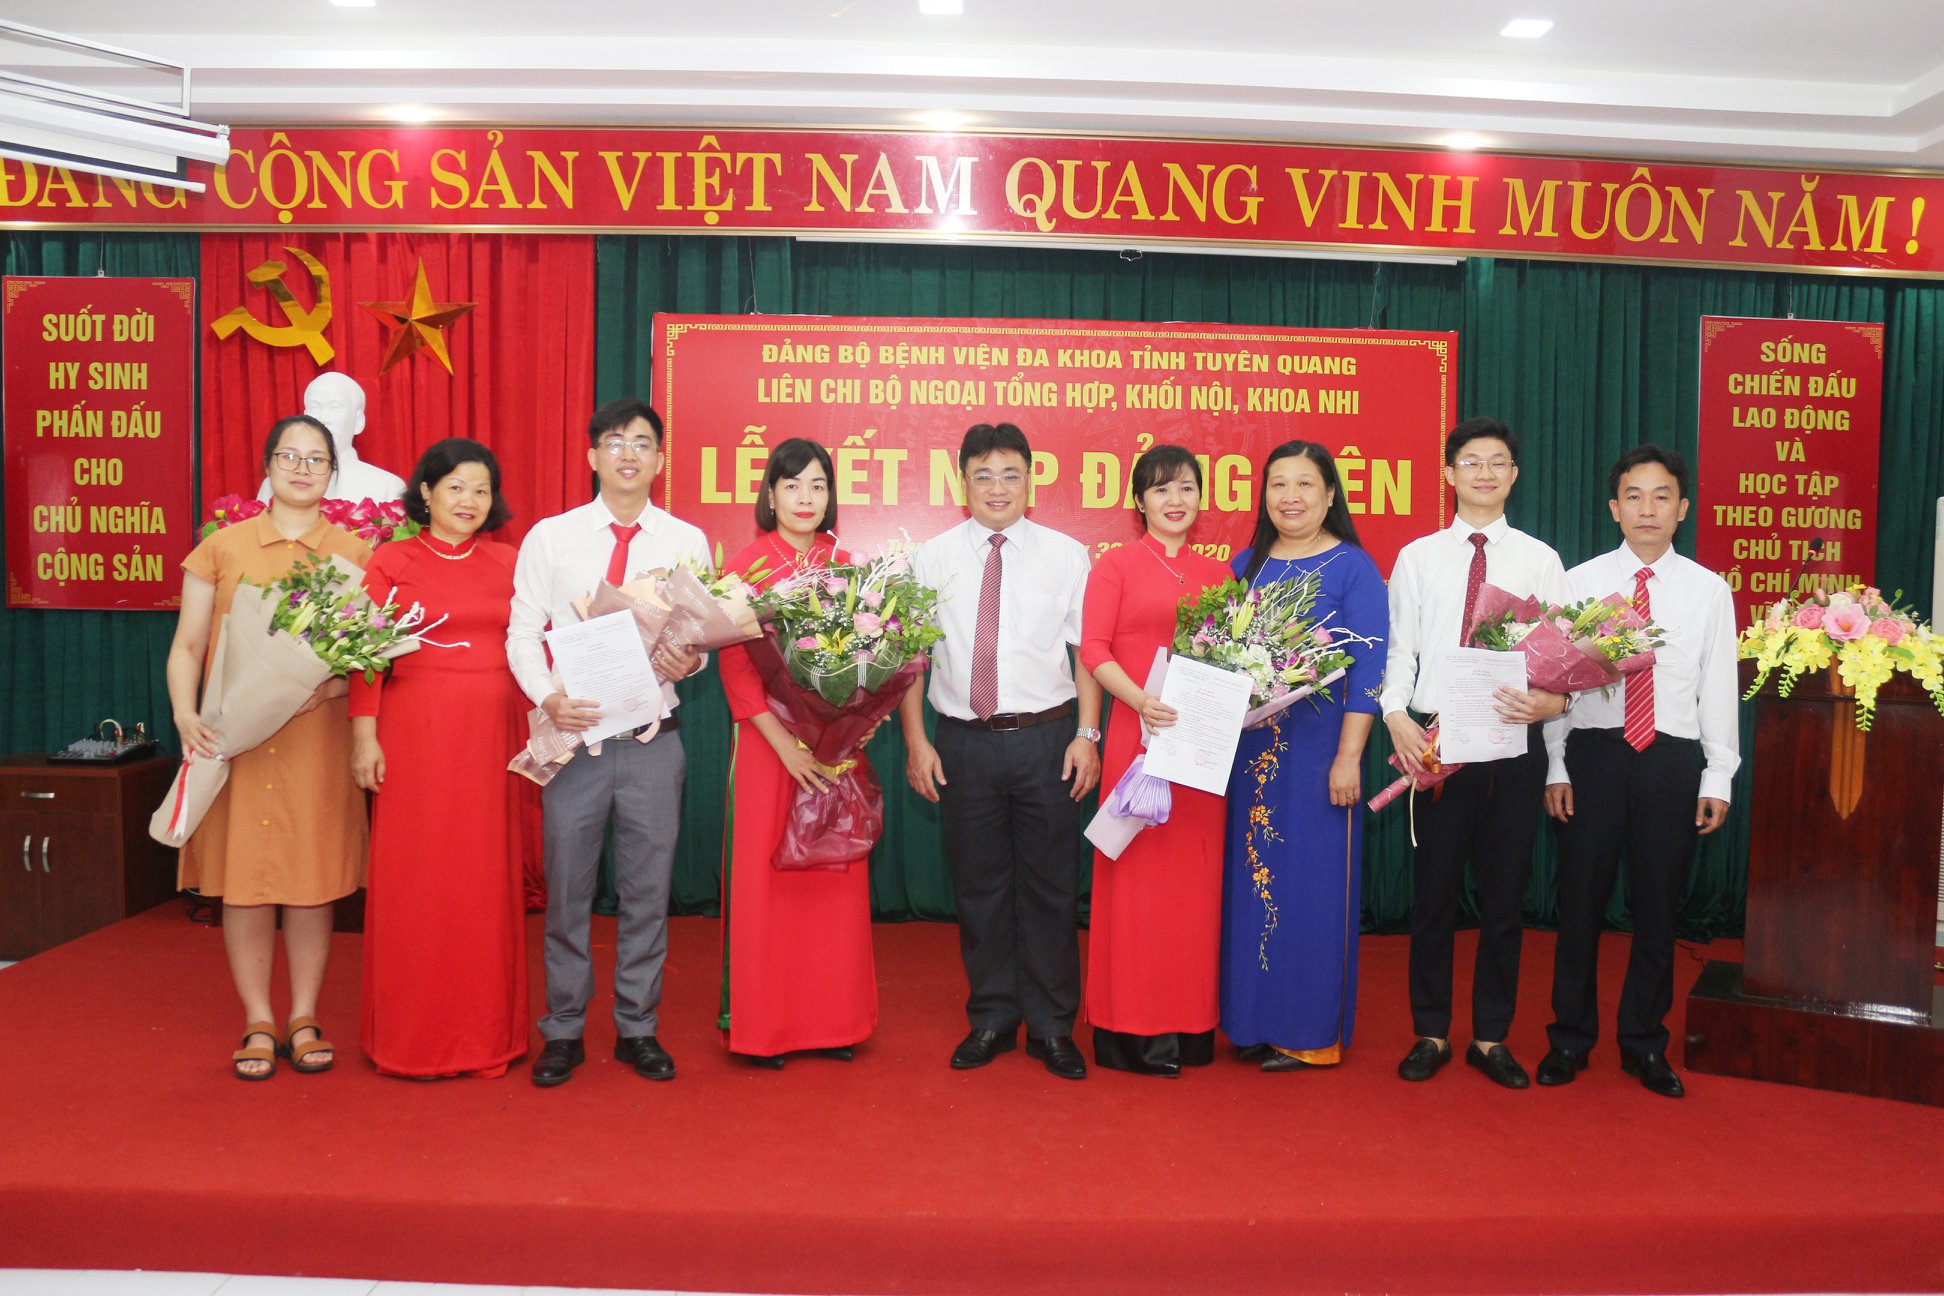 Đảng bộ Bệnh viện đa khoa tỉnh Tuyên Quang kết nạp thêm 05 Đảng viên mới